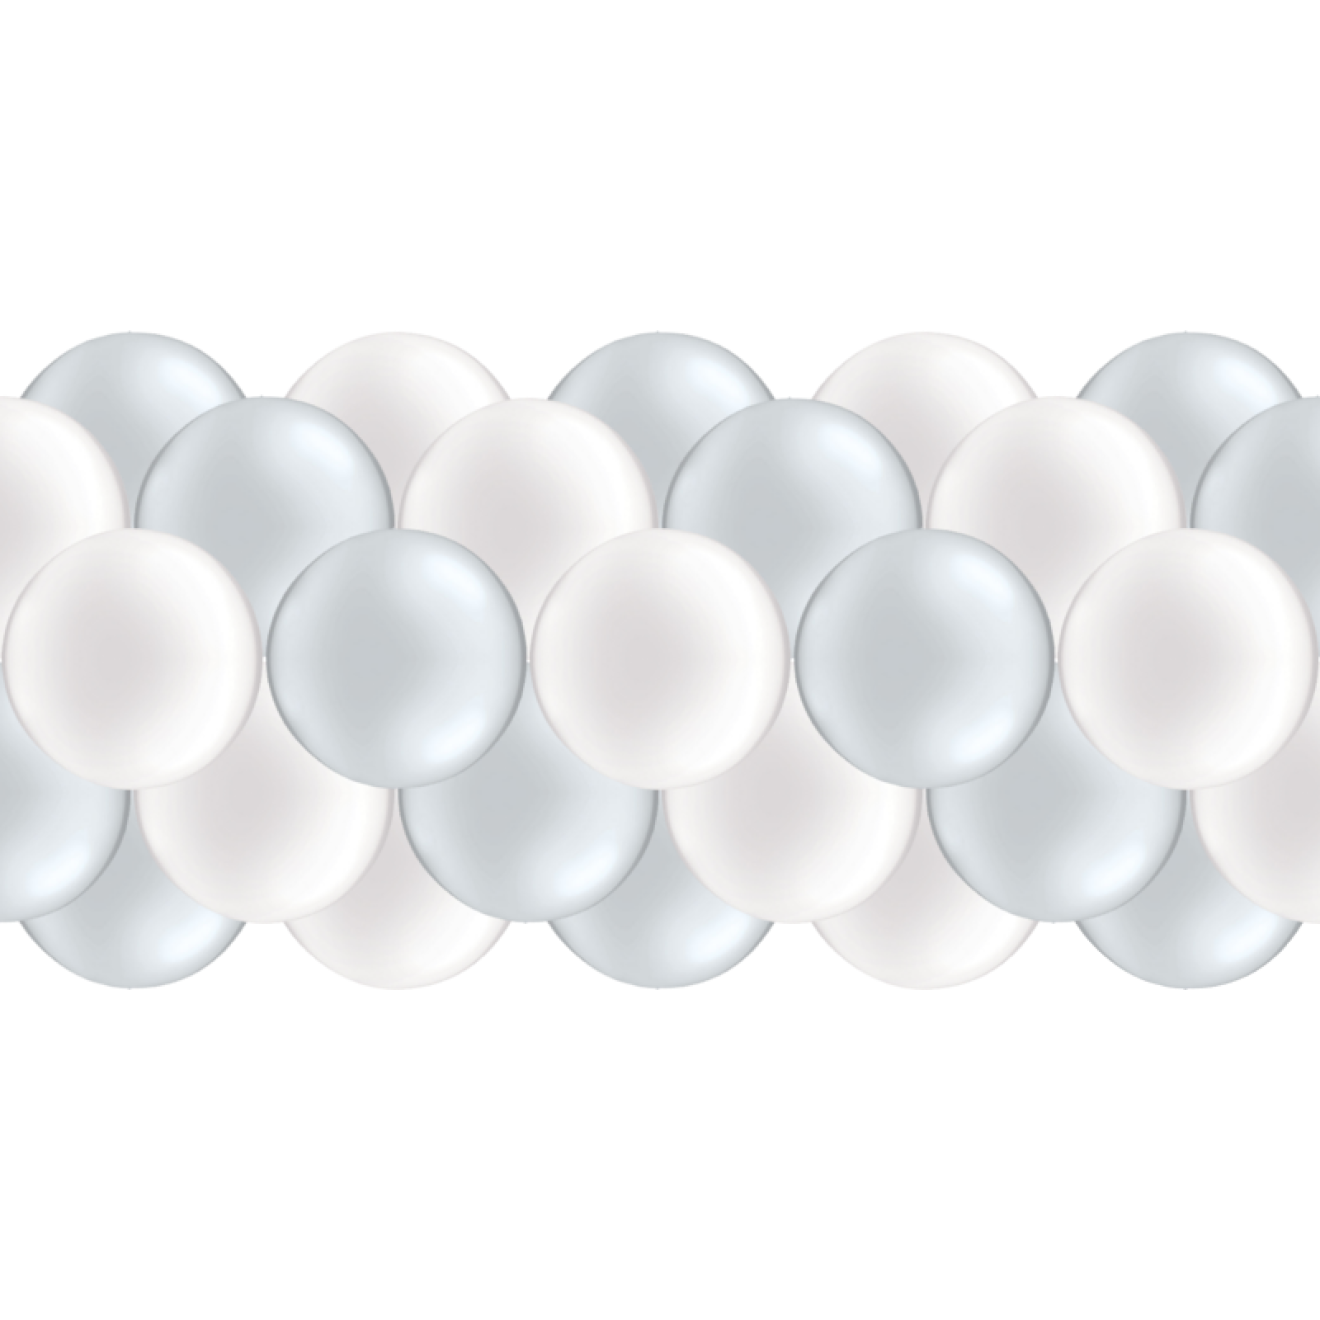 Luftballongirlanden-Set Silber & Weiß (Metallic / Glänzend) ab 3 m